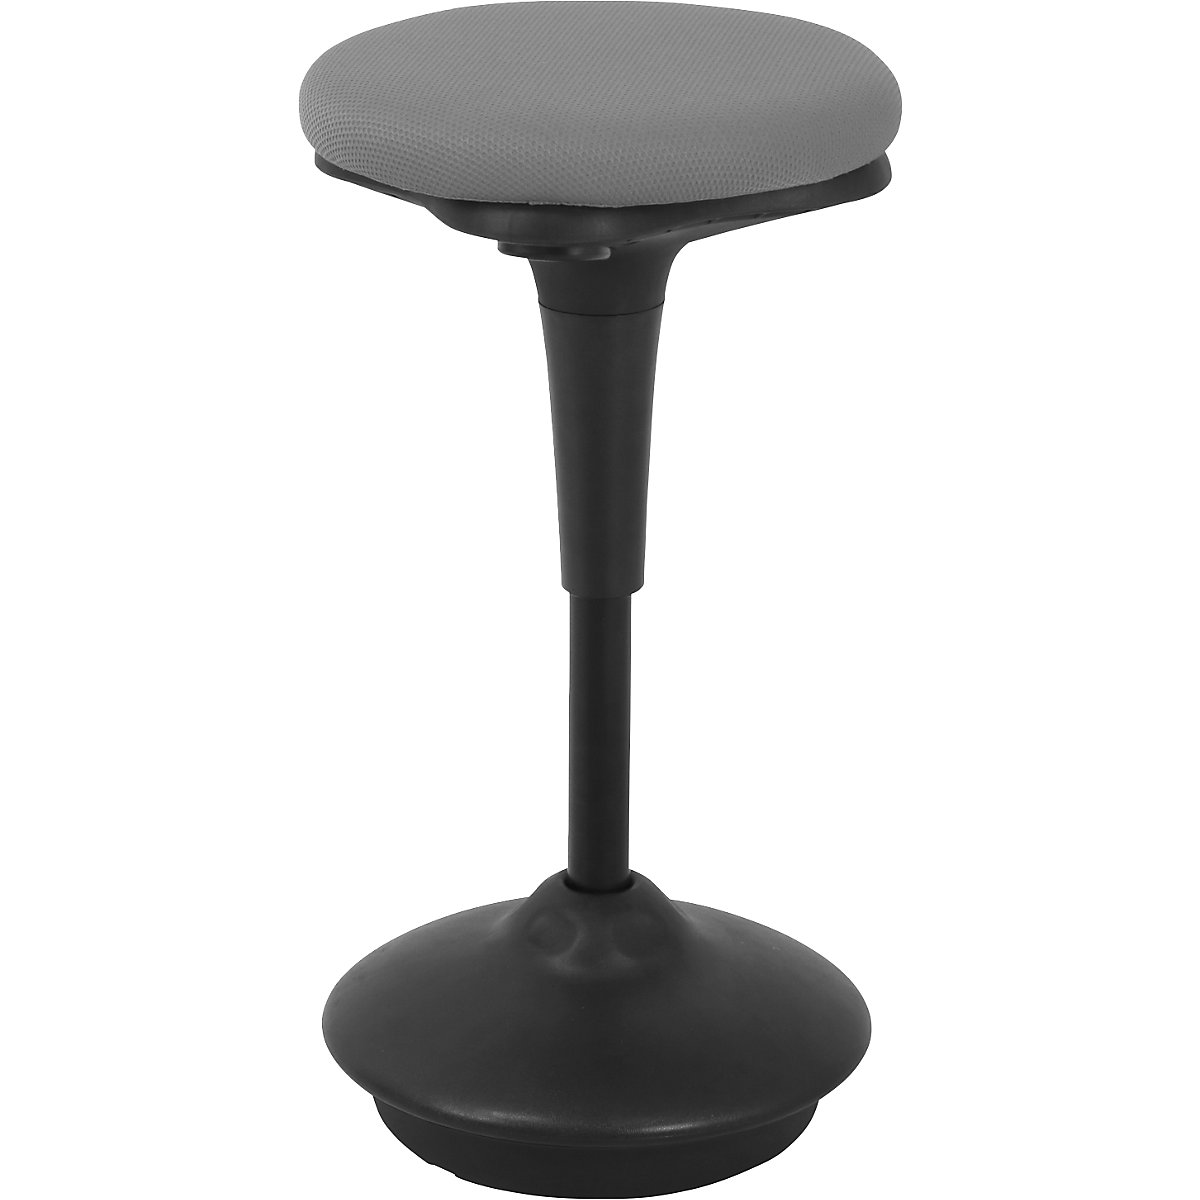 Visoka stolica 6131 – Twinco, okruglo sjedalo Ø 340 mm, presvlaka u sivoj boji-4